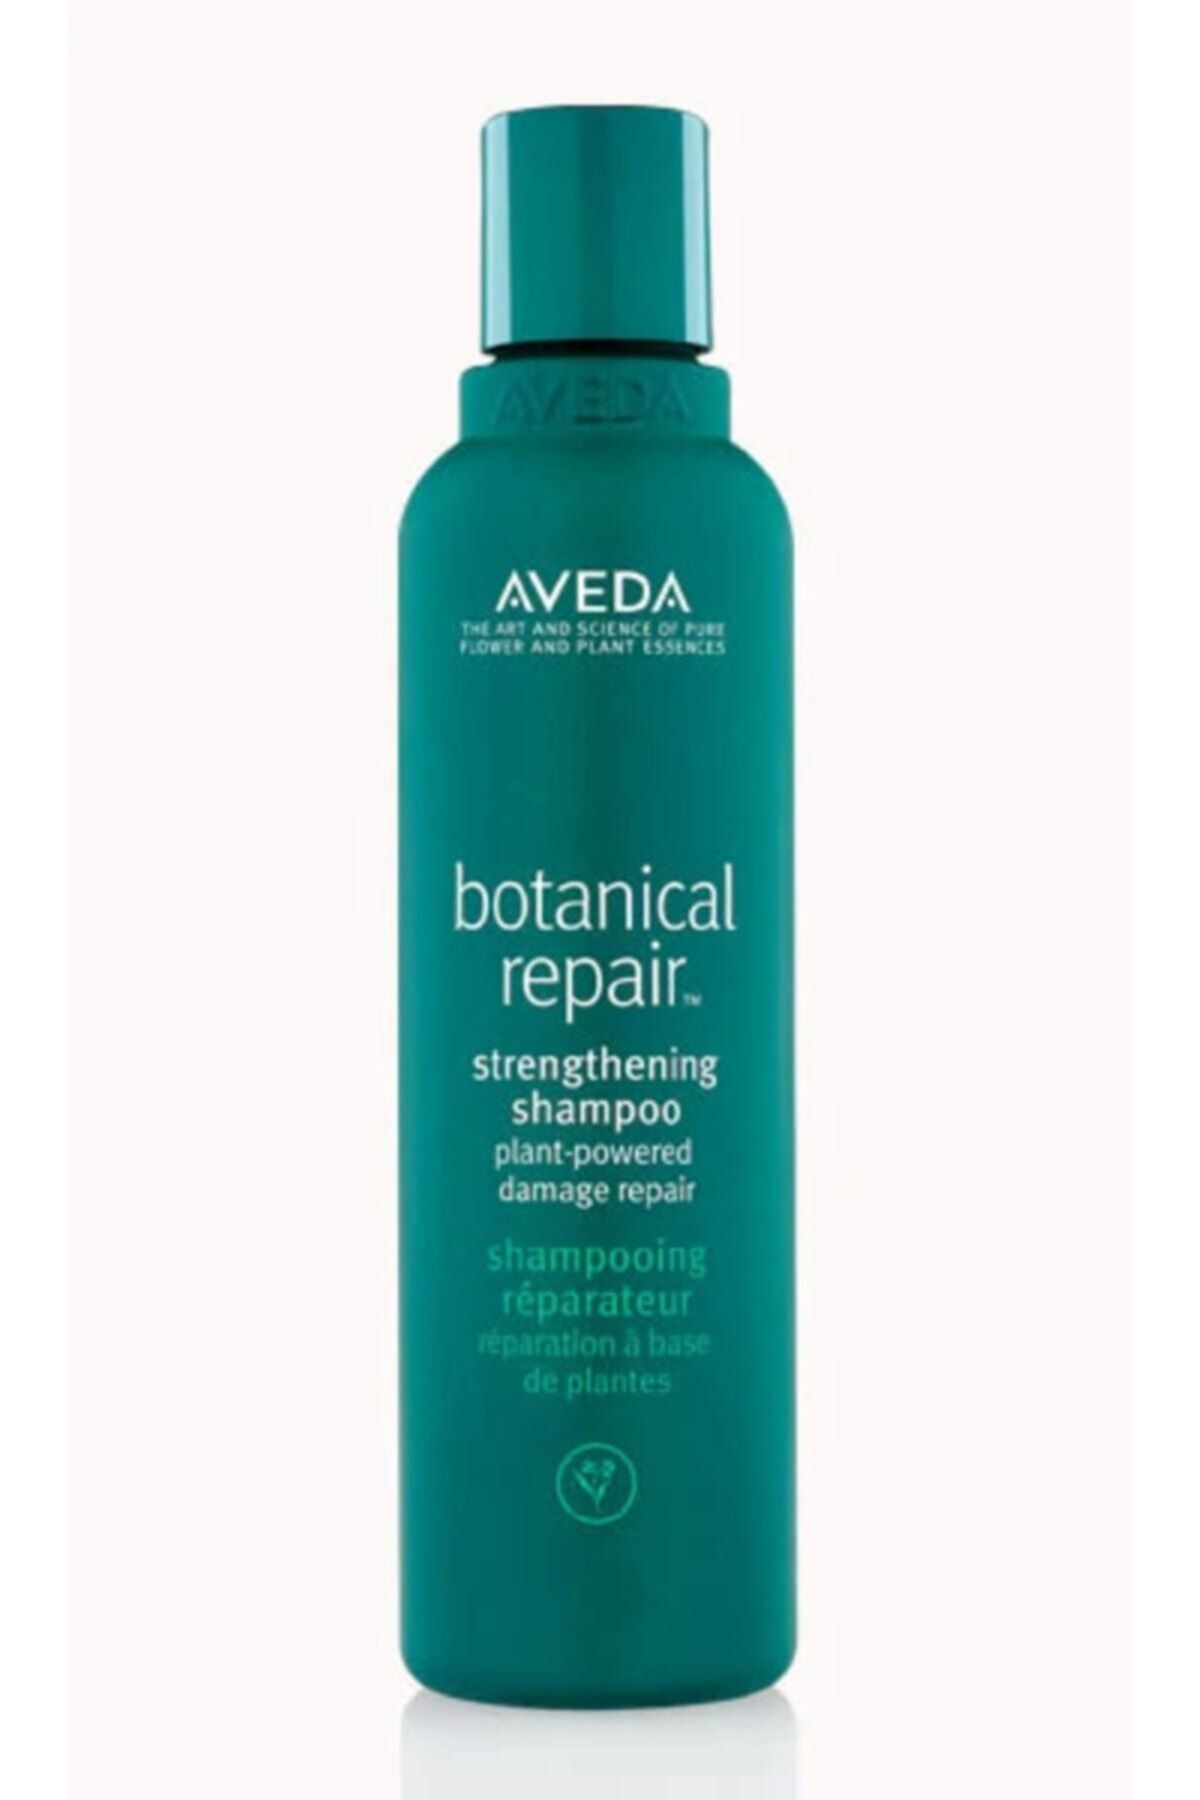 Aveda Botanical Repair Yıpranmış Saçlar Için Onarım Şampuanı 200ml 18084019481